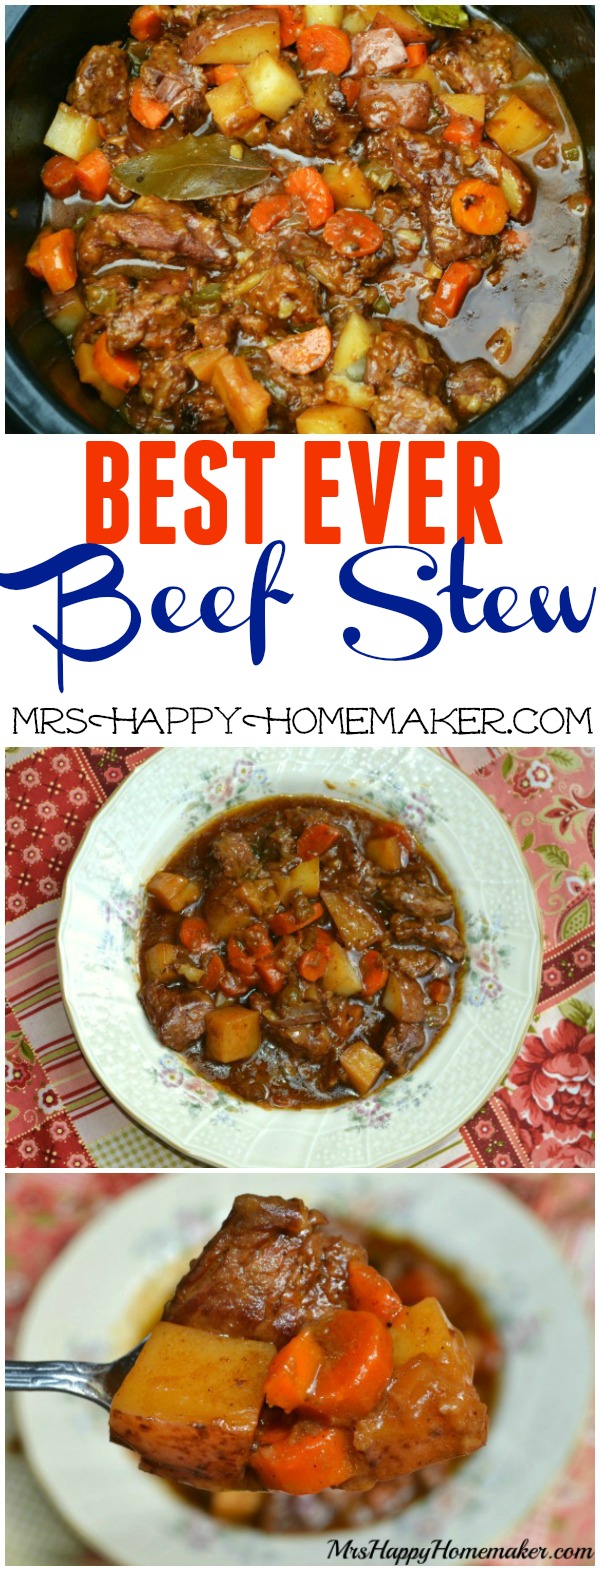 BEST EVER Beef Stew